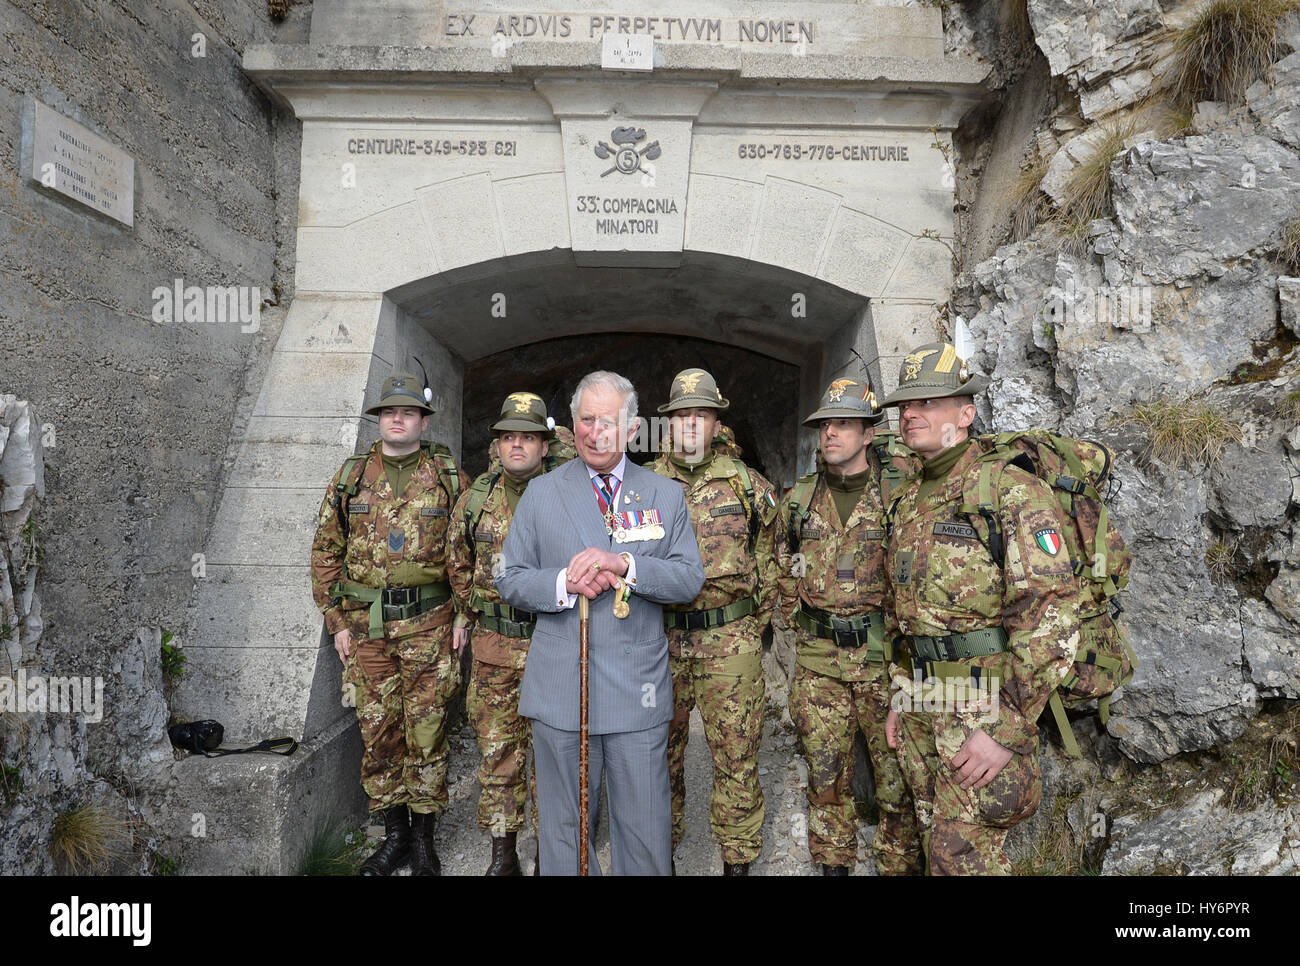 Der Prince Of Wales mit Soldaten aus der italienischen Alpini Berg Kriegsführung Militärkorps am Eingang zu einem Tunnel hoch in den Dolomiten in Norditalien, wo britische Soldaten neben Italienern gegen die Österreicher im ersten Weltkrieg kämpfte. Stockfoto